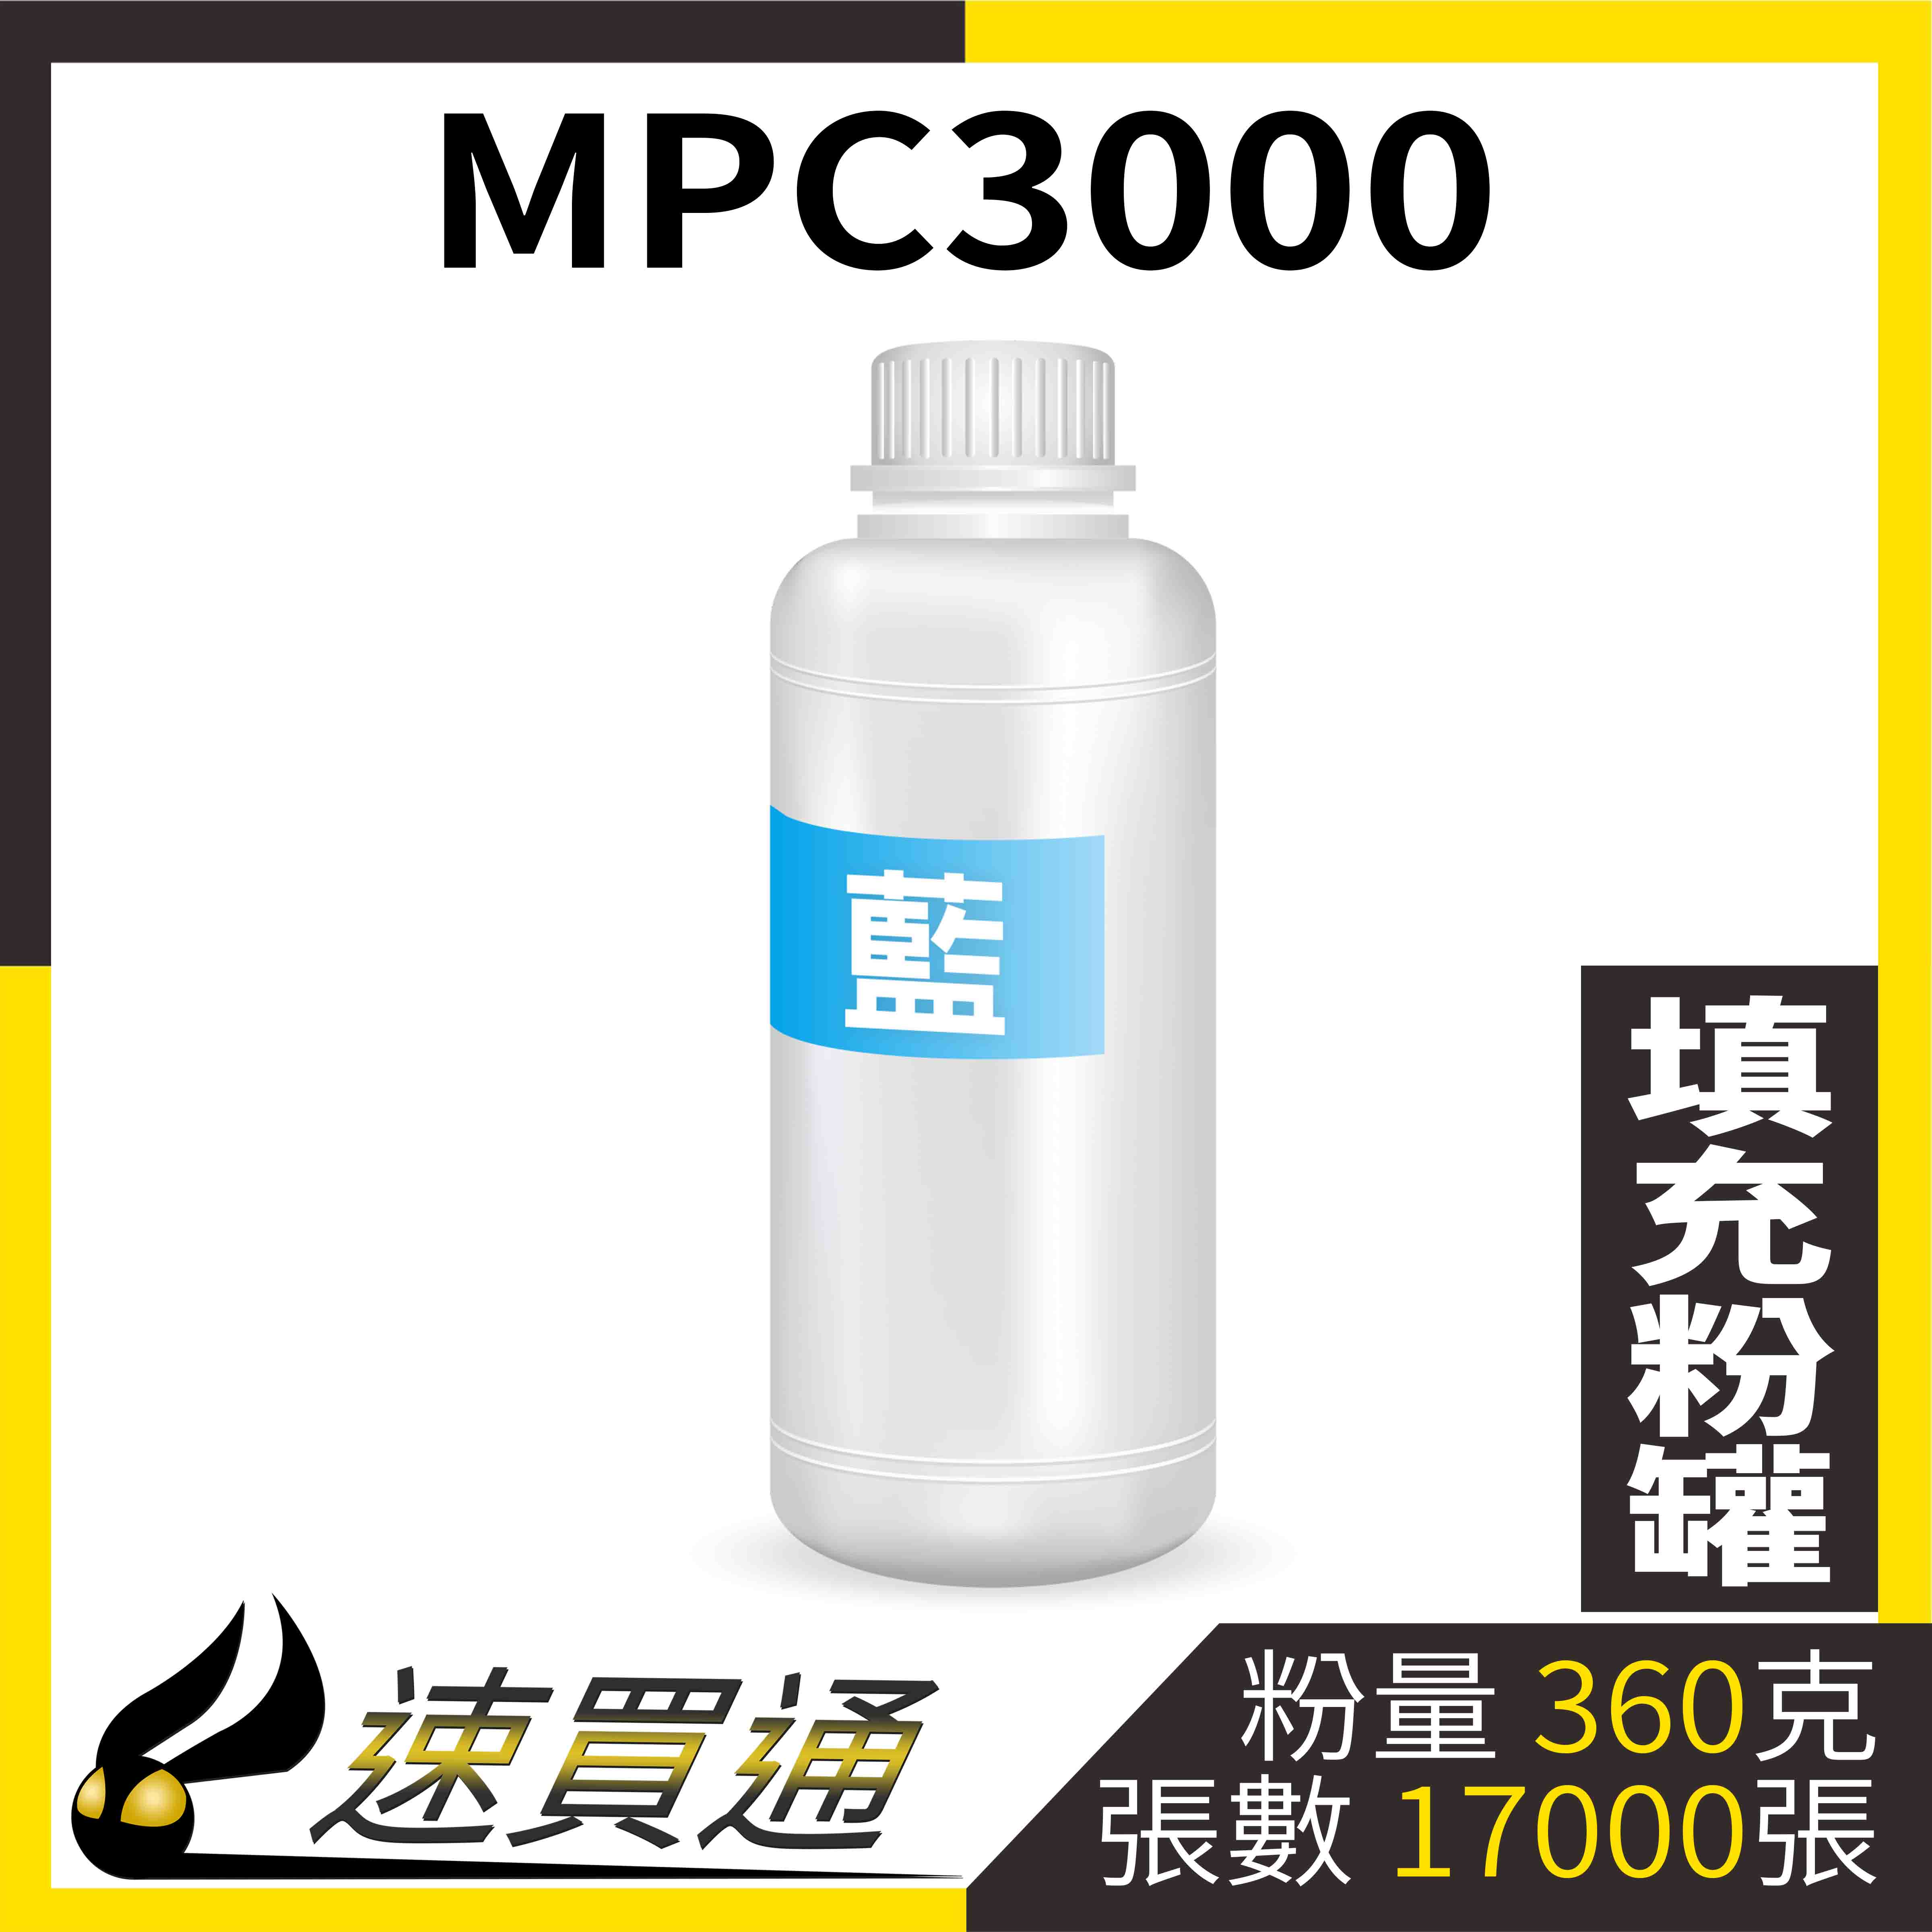 【速買通】RICOH MPC3000 藍 填充式碳粉罐